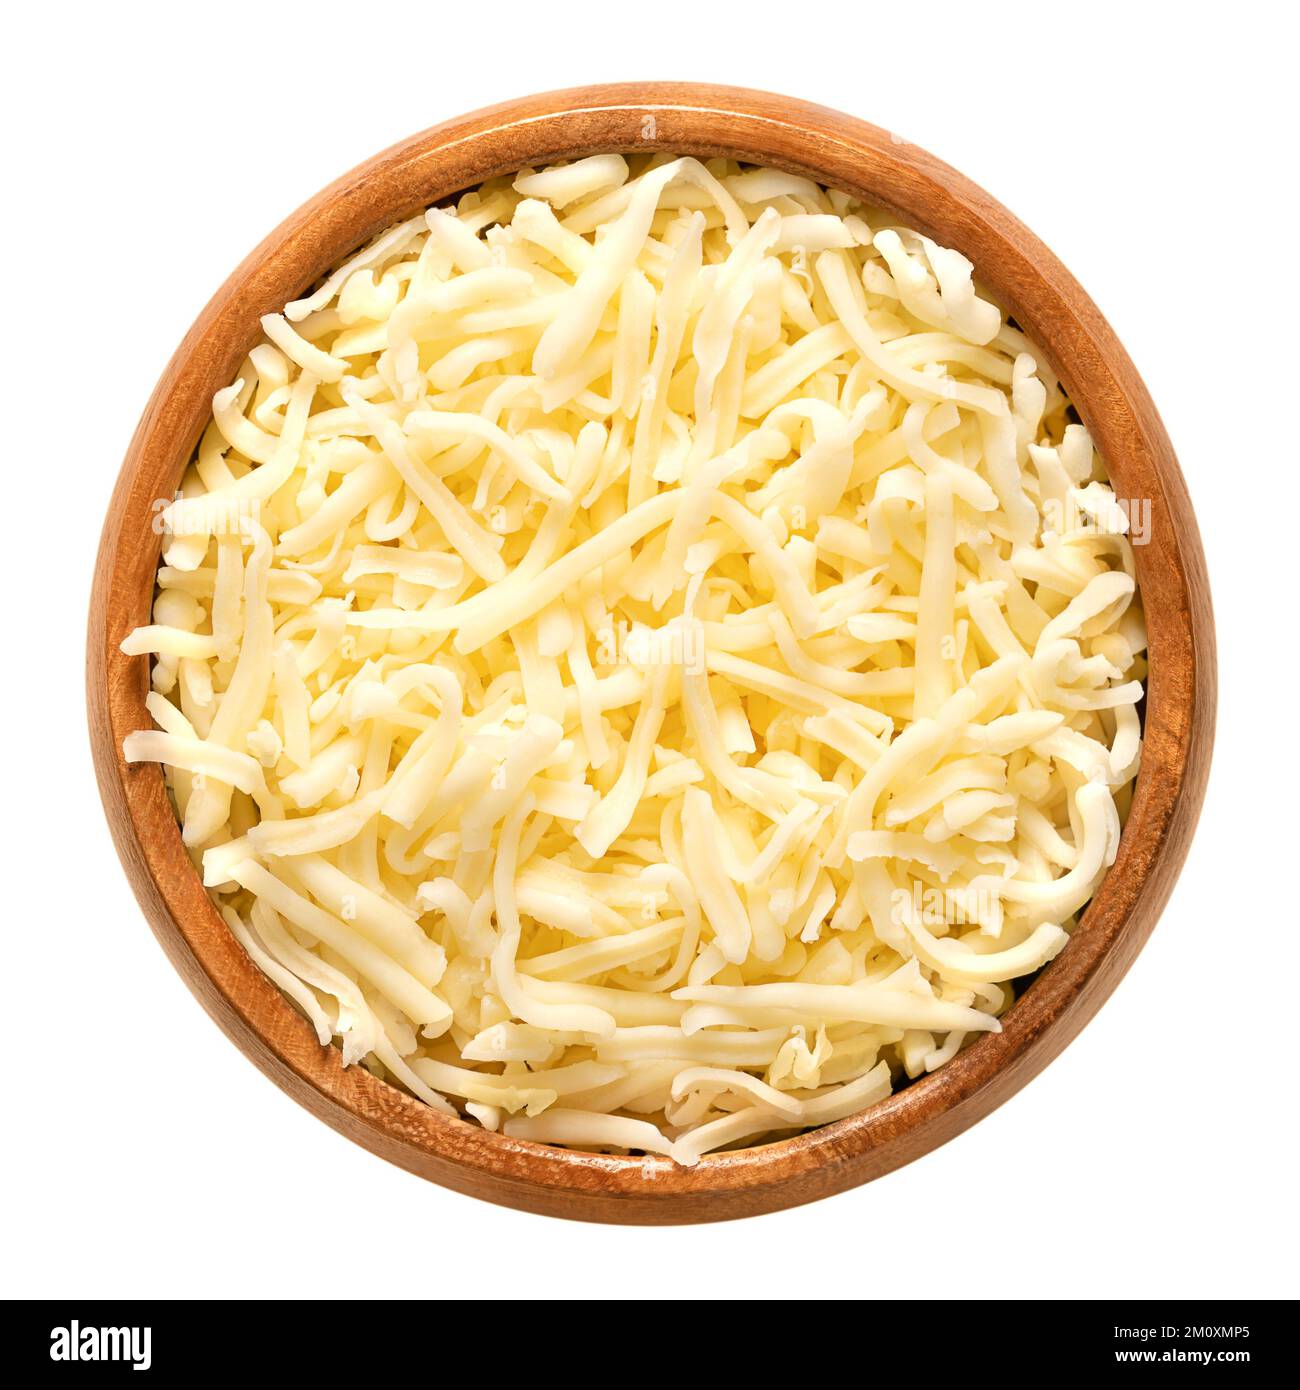 Geriebener Mozzarella-Käse in einer Holzschüssel. Geriebener, feuchtigkeitsarmer, teilweise entrahmter Mozzarella, ein italienischer Käse, aus pasteurisierter Kuhmilch. Stockfoto